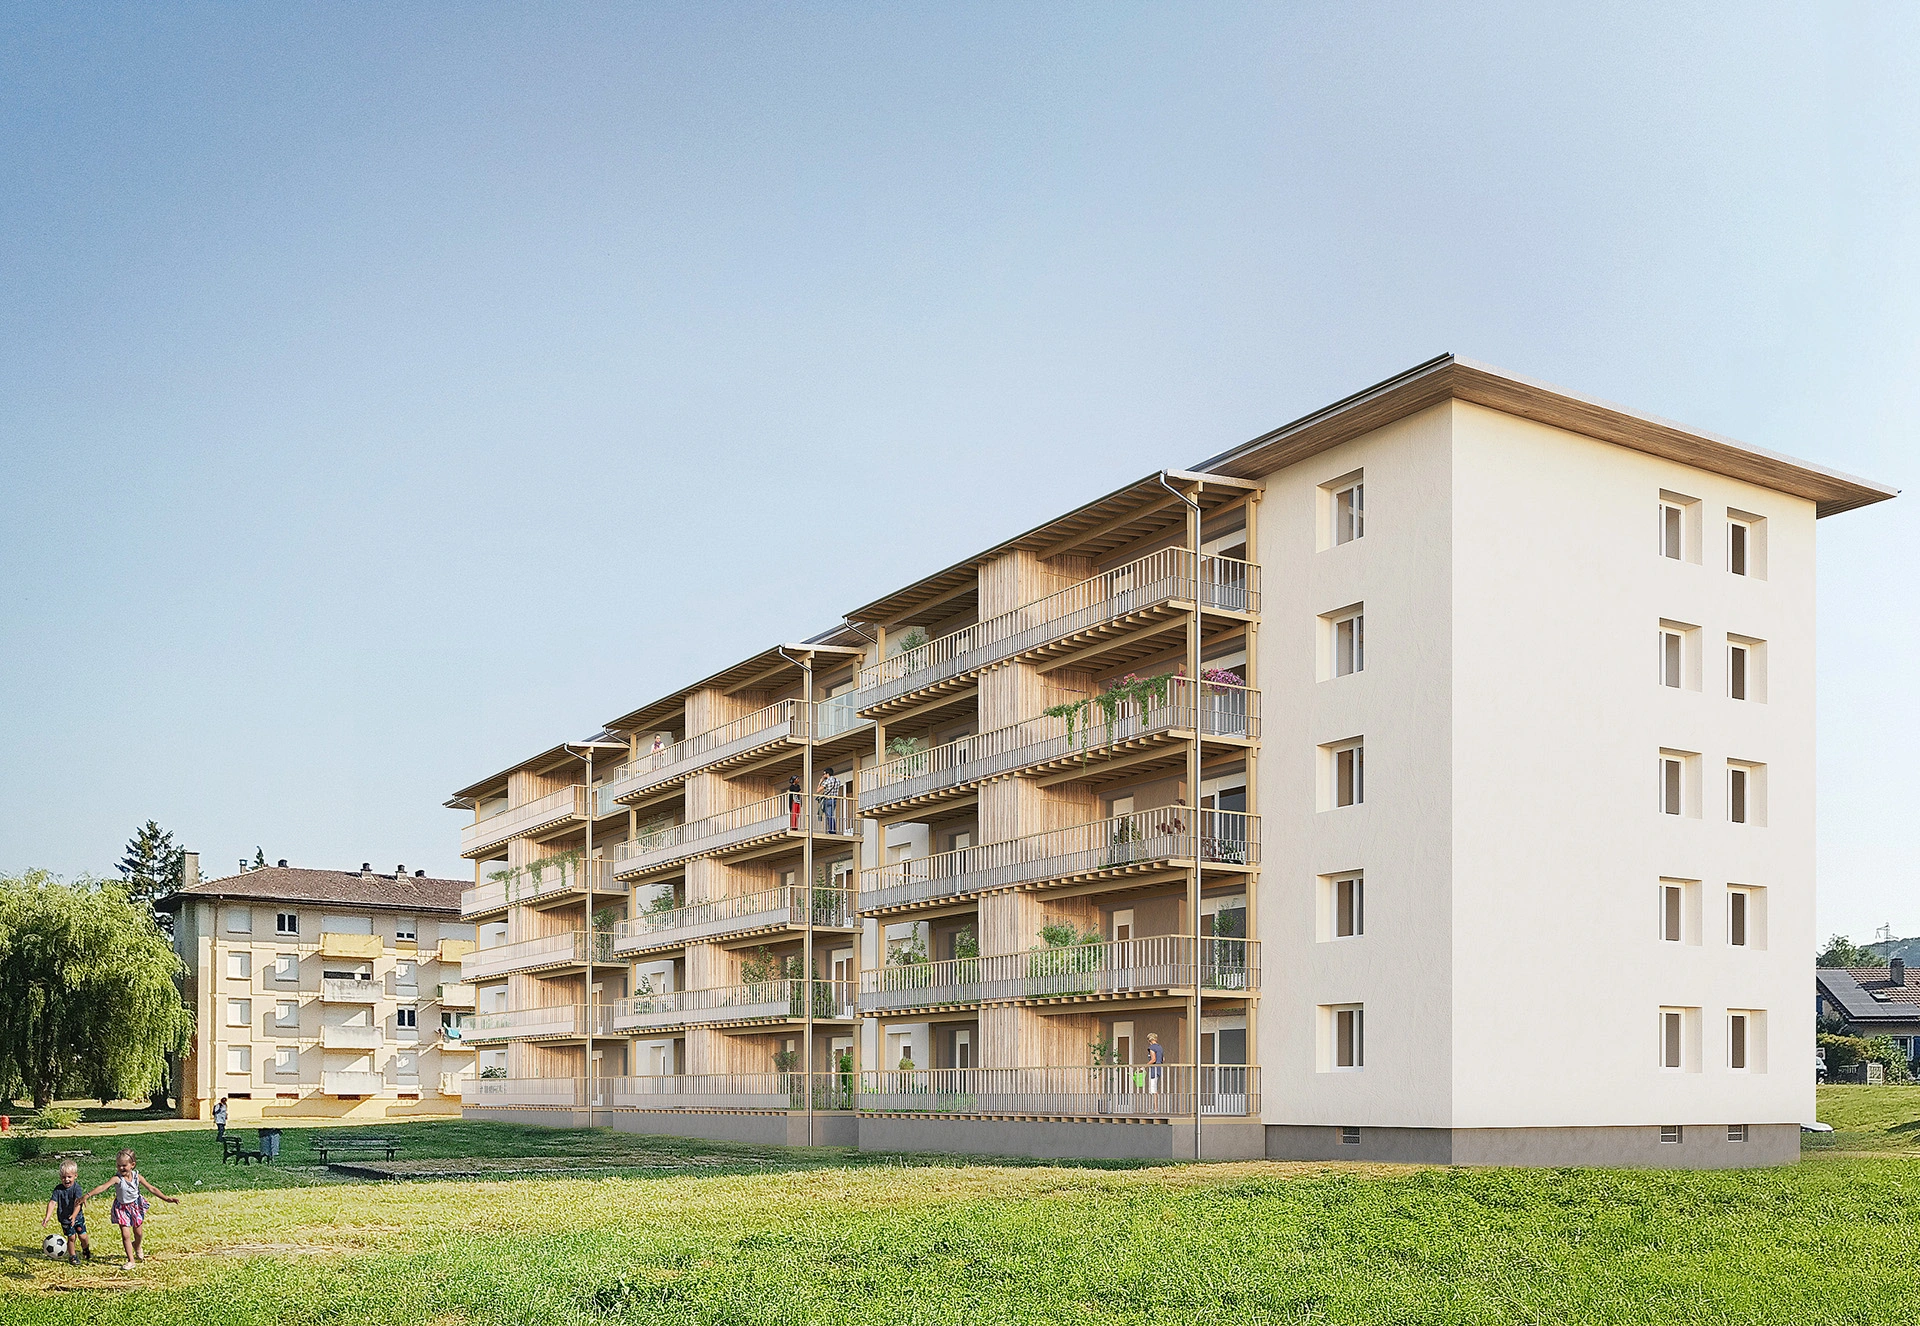 1_Seyssel_Montblanc_logements_balcons_rehabilitation_logements_ankha_architecte_architecture